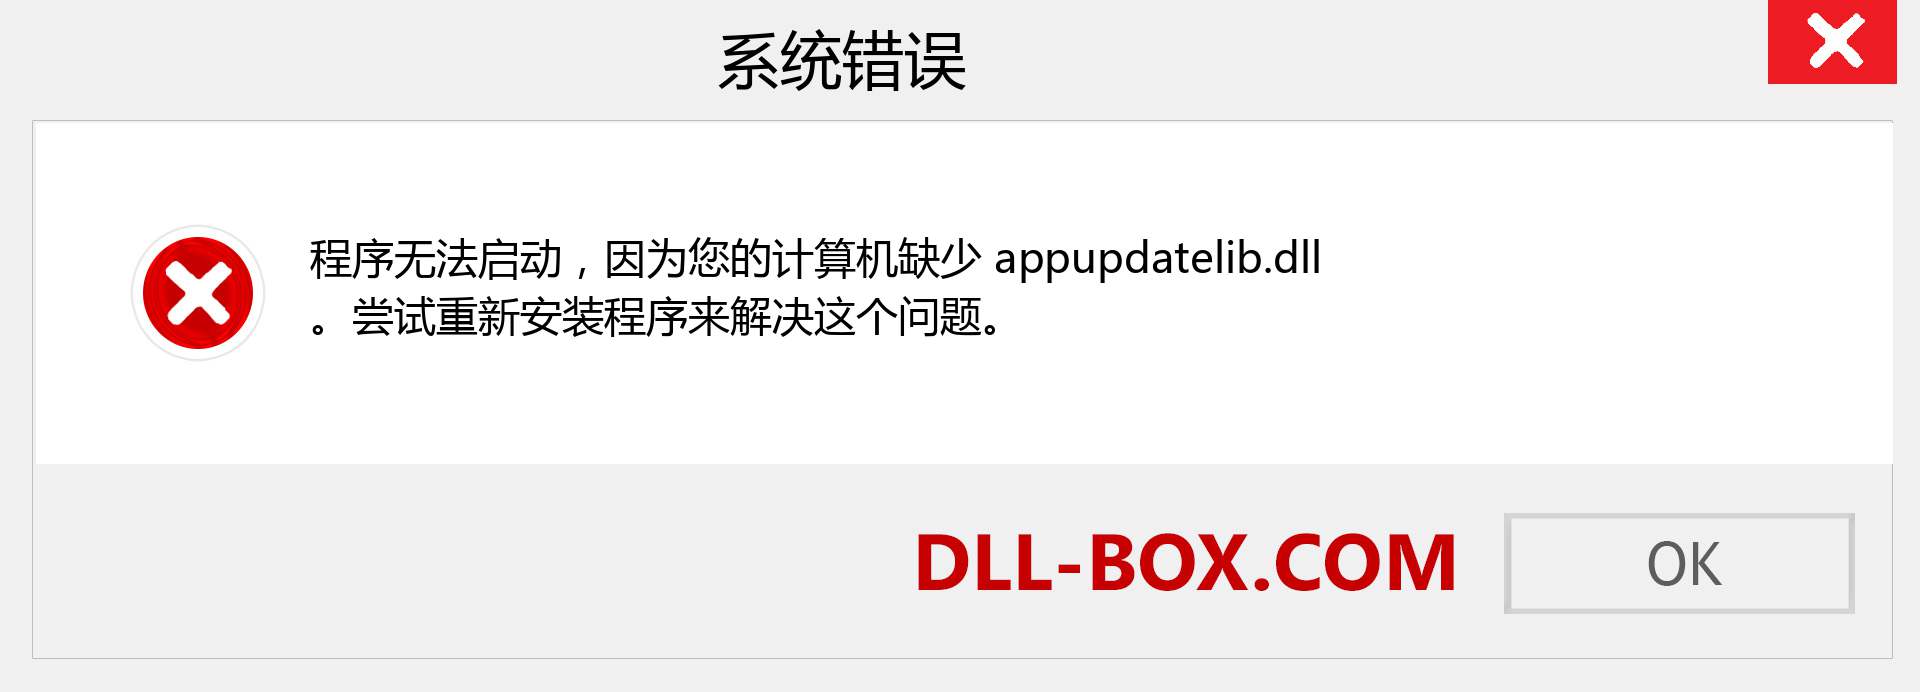 appupdatelib.dll 文件丢失？。 适用于 Windows 7、8、10 的下载 - 修复 Windows、照片、图像上的 appupdatelib dll 丢失错误